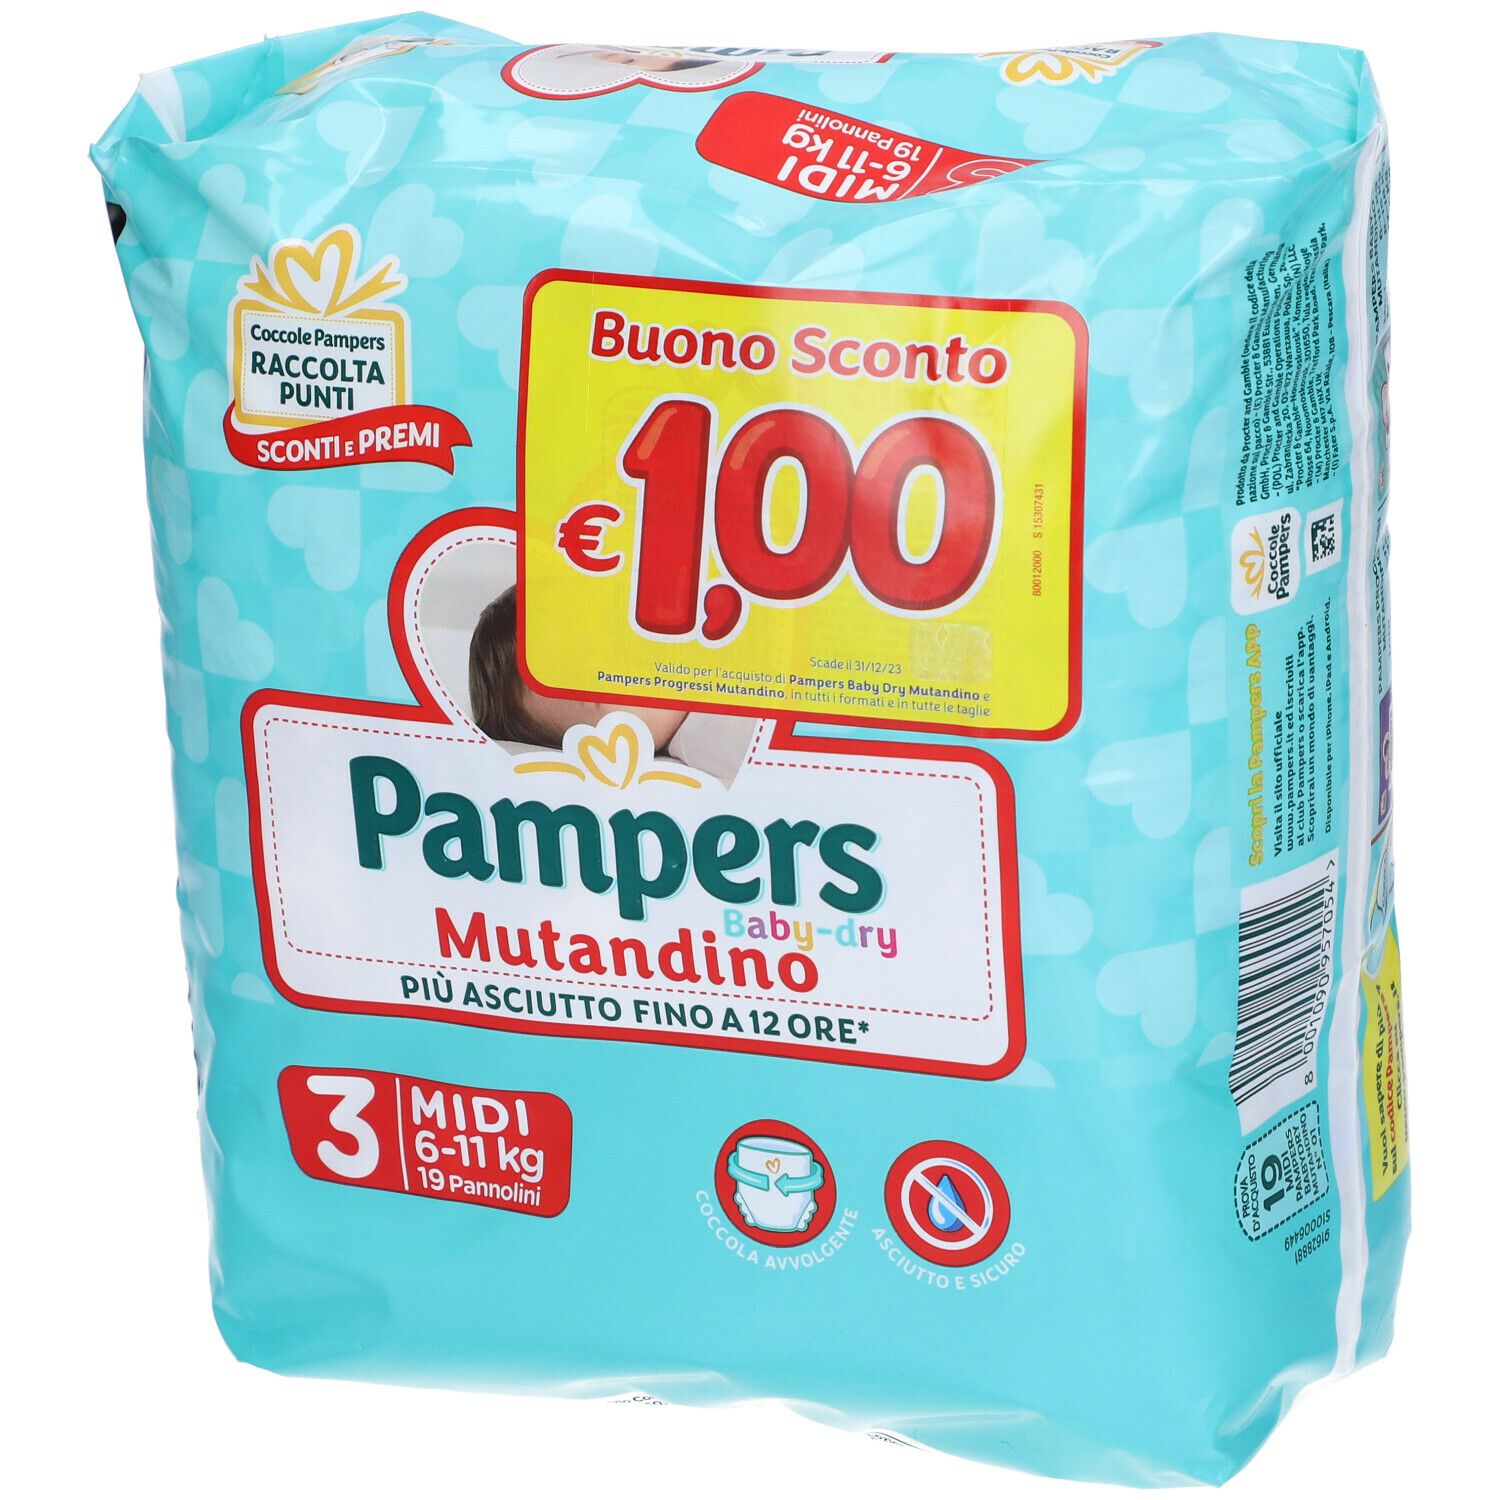 Pampers Baby Dry Mutandino 3 Midi